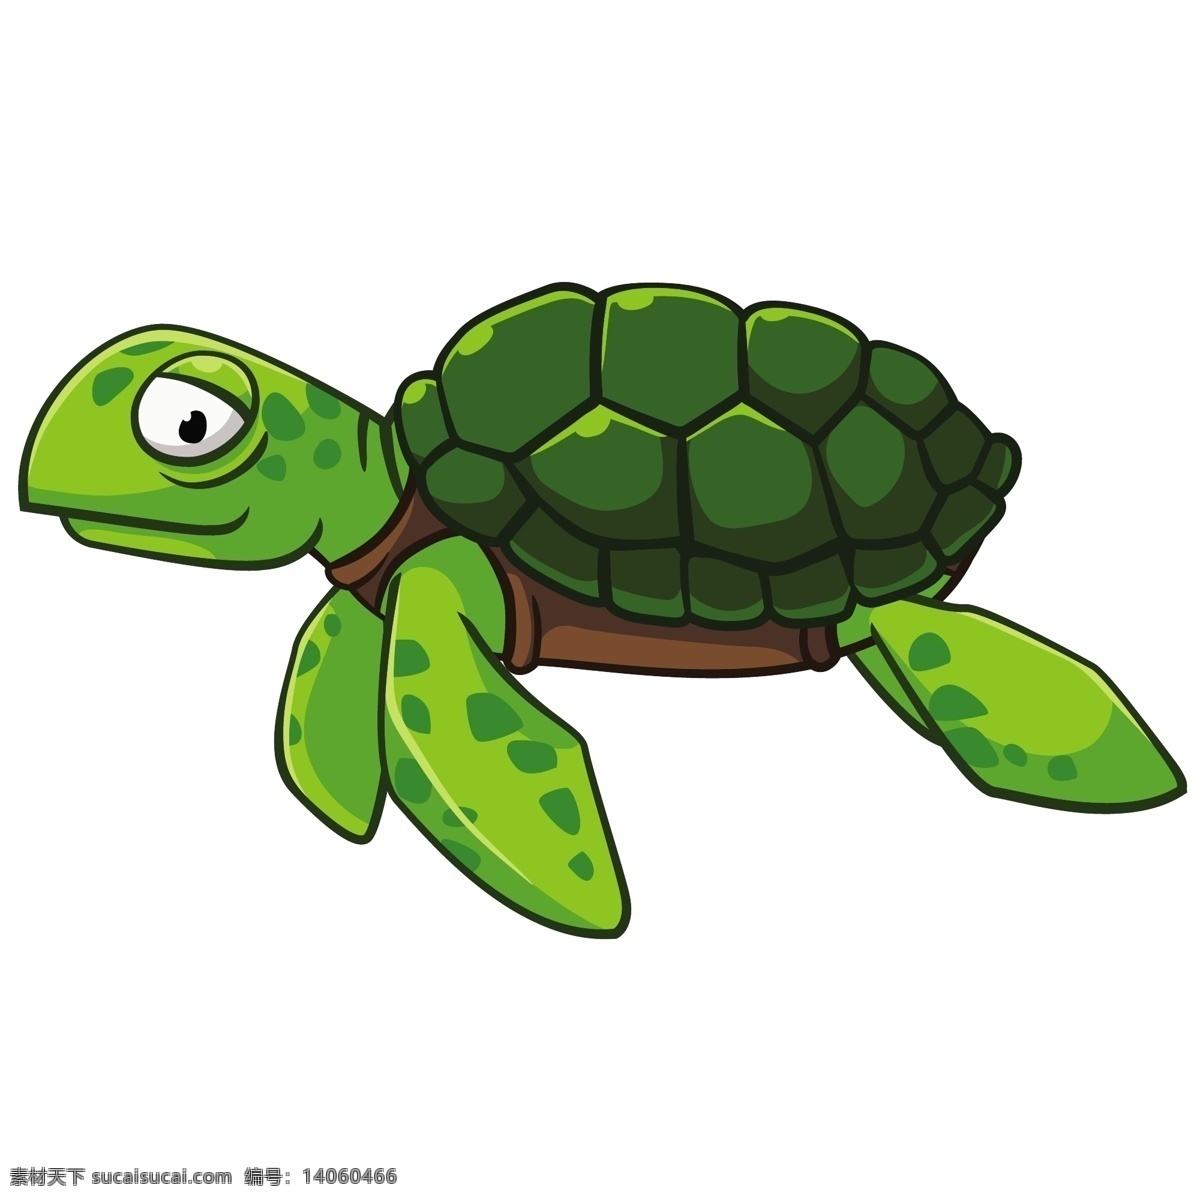 绿色 卡通 乌龟 矢量 卡通动物 乌龟绿色 乌龟卡通 动漫 卡通插画 矢量素材 动物 矢量图 卡通设计